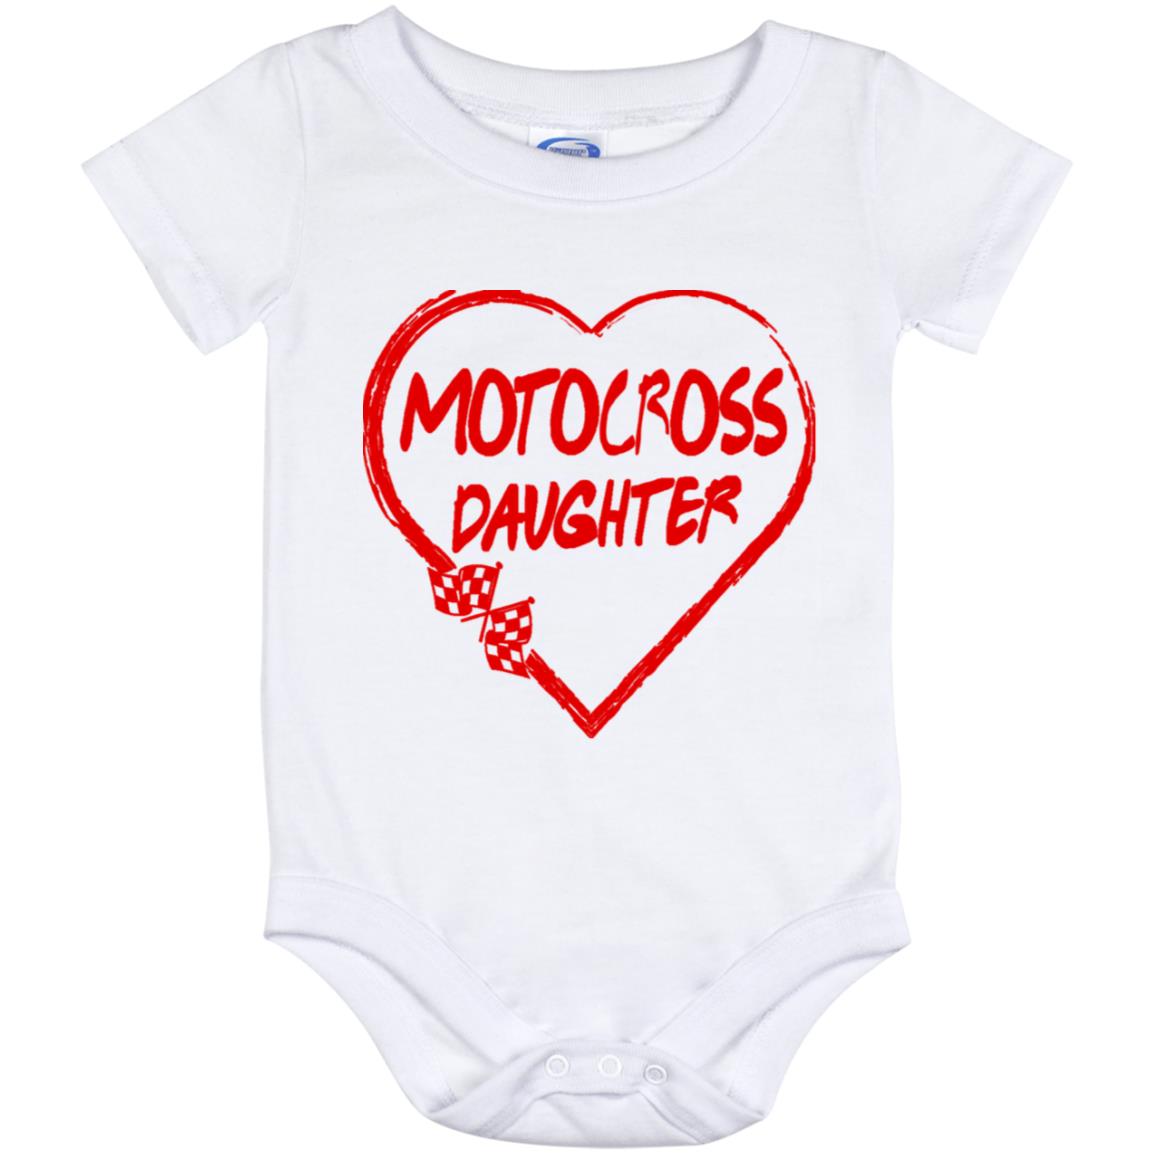 Motocross Daughter Heart Baby Onesie 12 Month